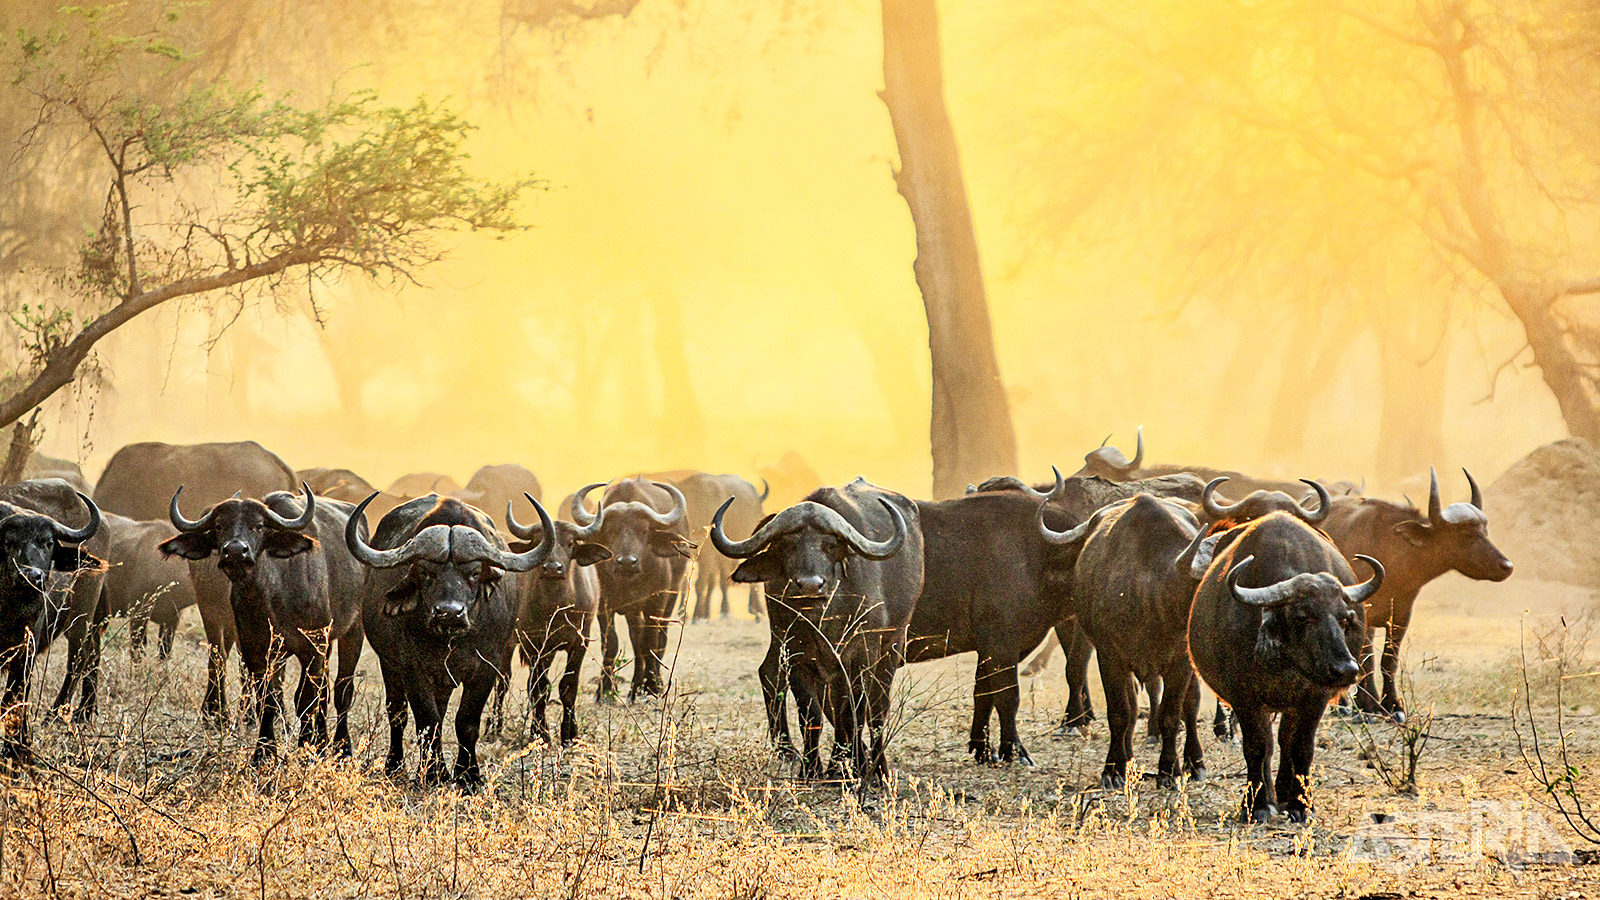 Het Lower Zambezi Park omvat ruim 4.000km² natuur, maar het meeste wild vind je in de vallei rond de rivier